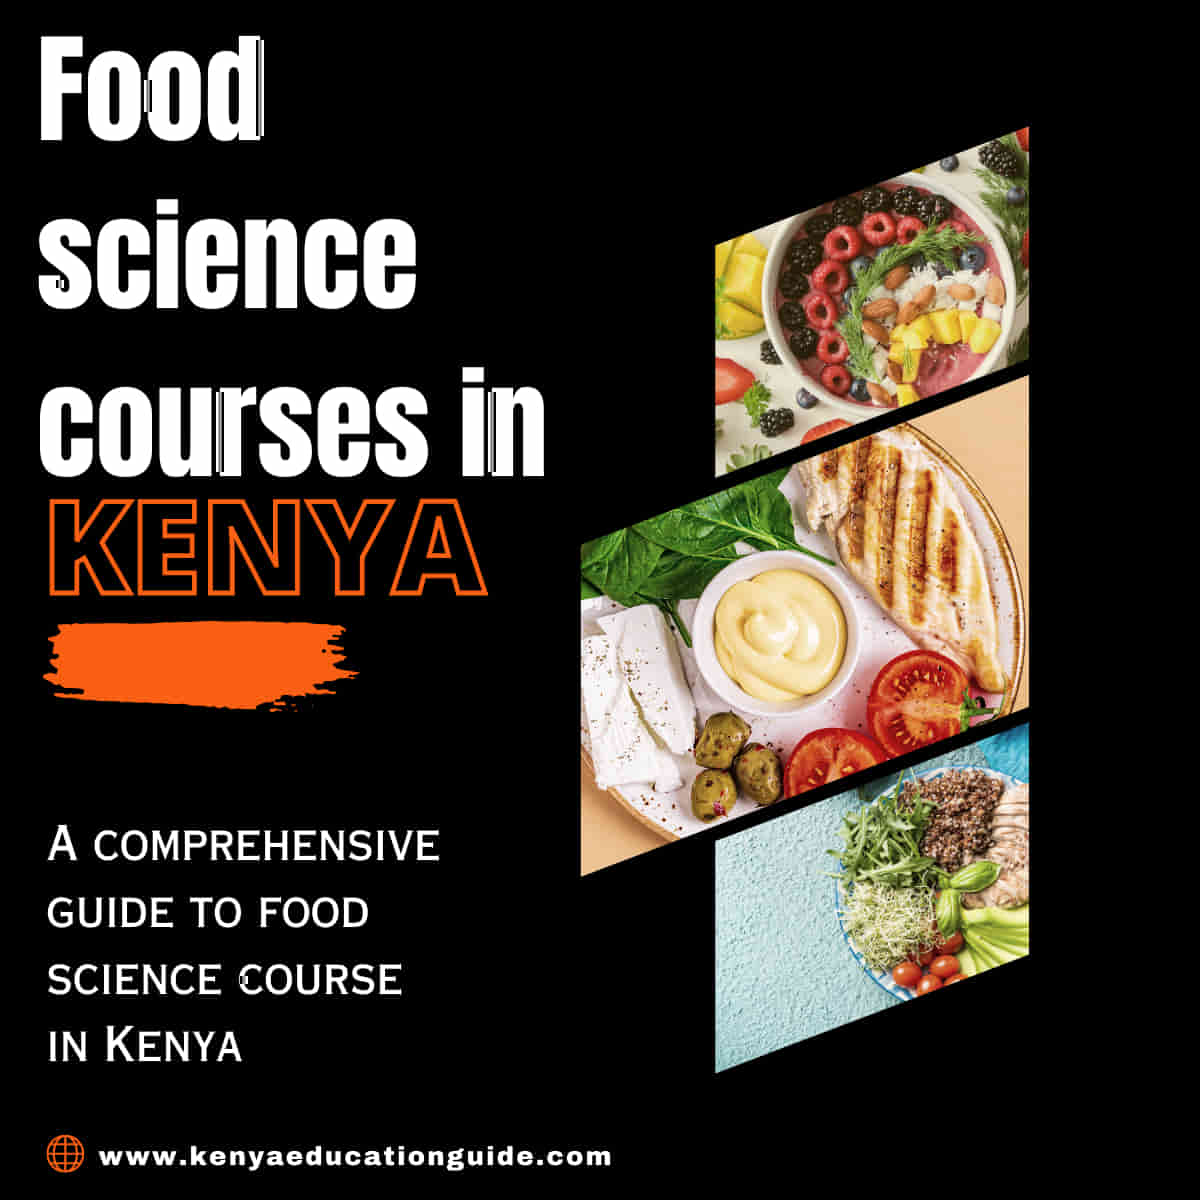 Food science courses in Kenya